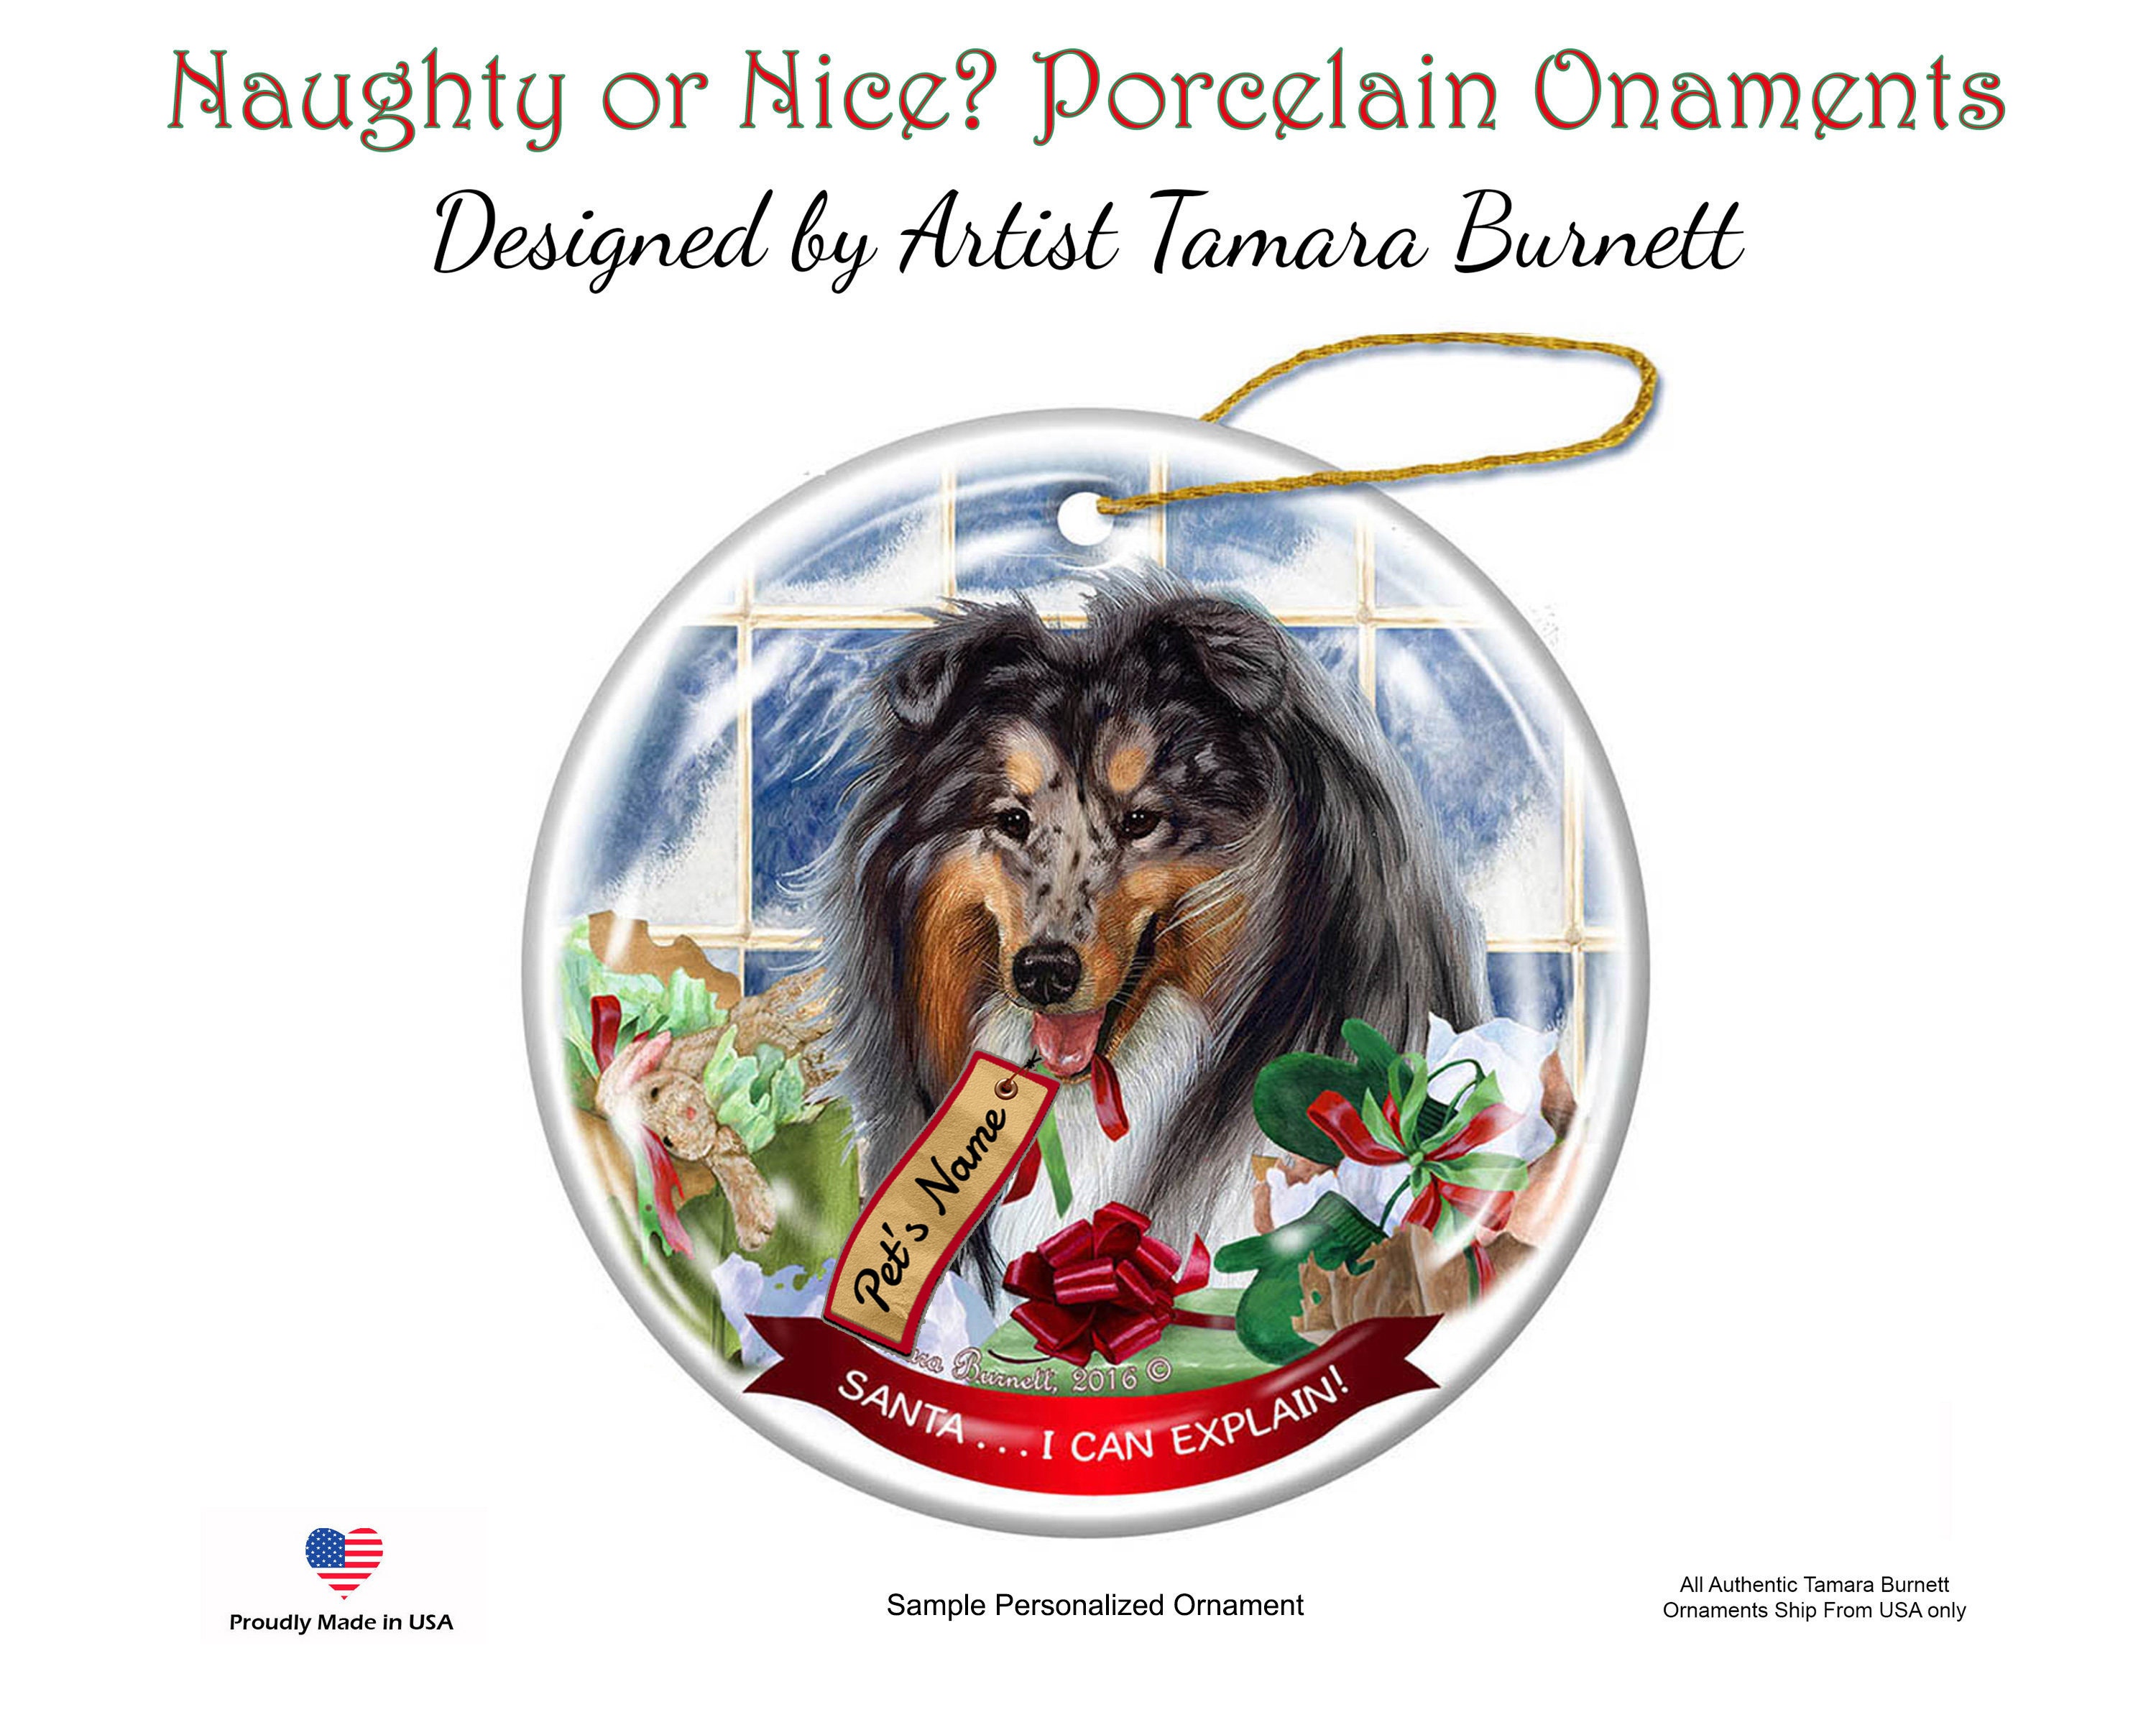 I Can Explain!' Leonberger Dog Porcelain Hanging Ornament Pet Gift 'Santa. 